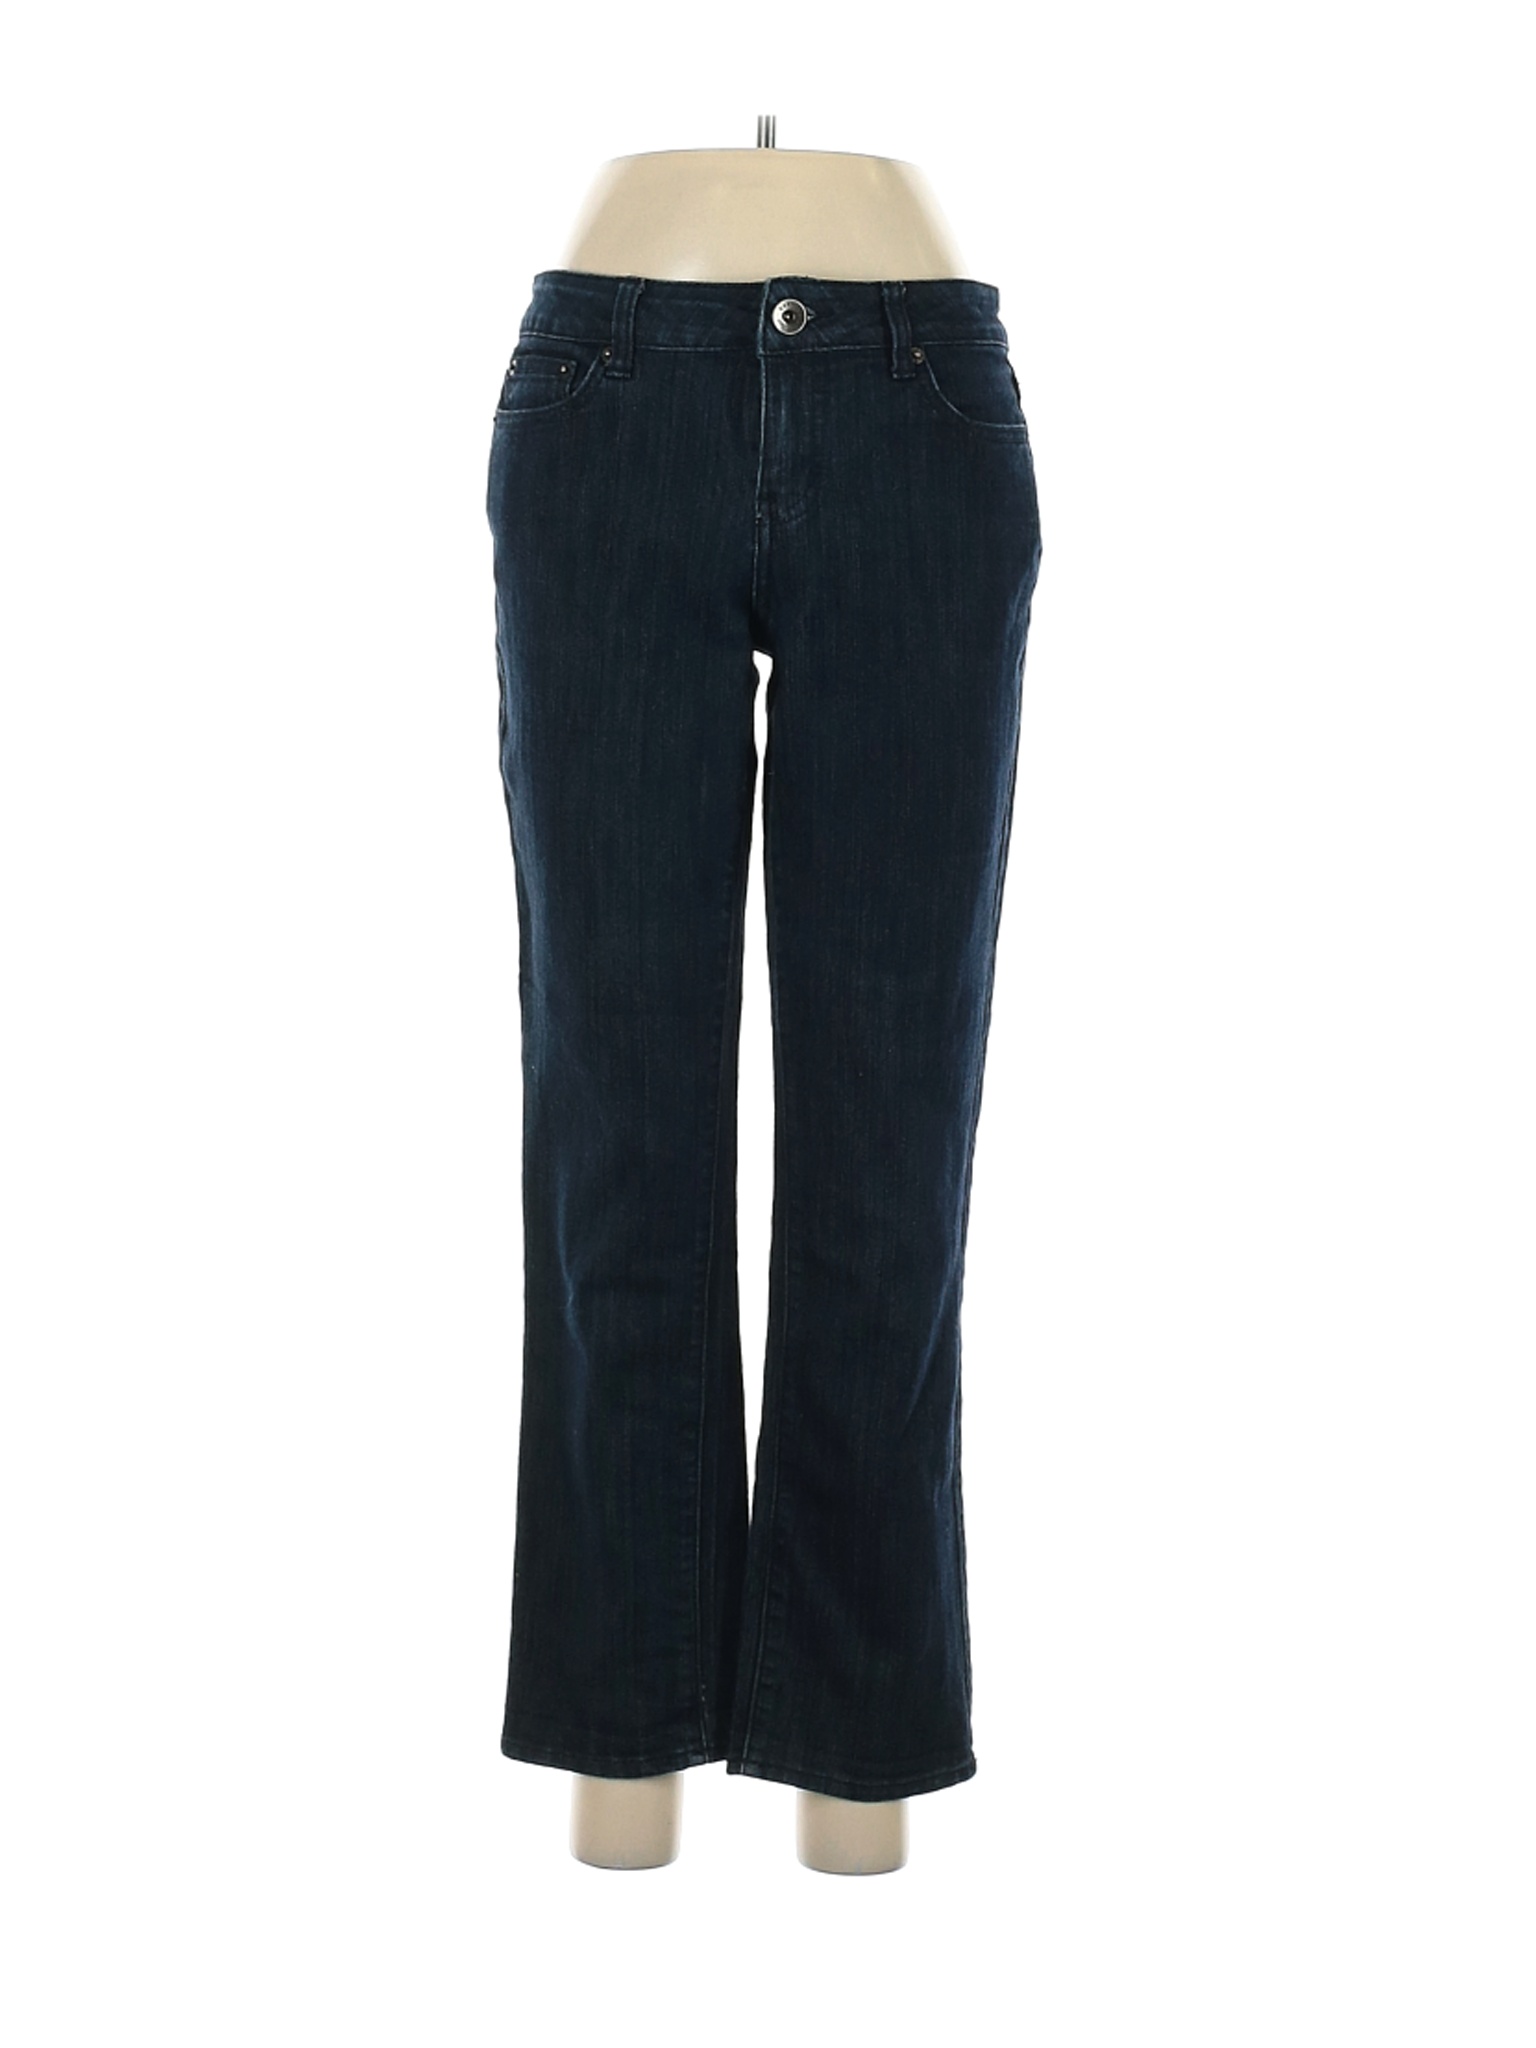 DKNY Jeans Women Blue Jeans 6 | eBay